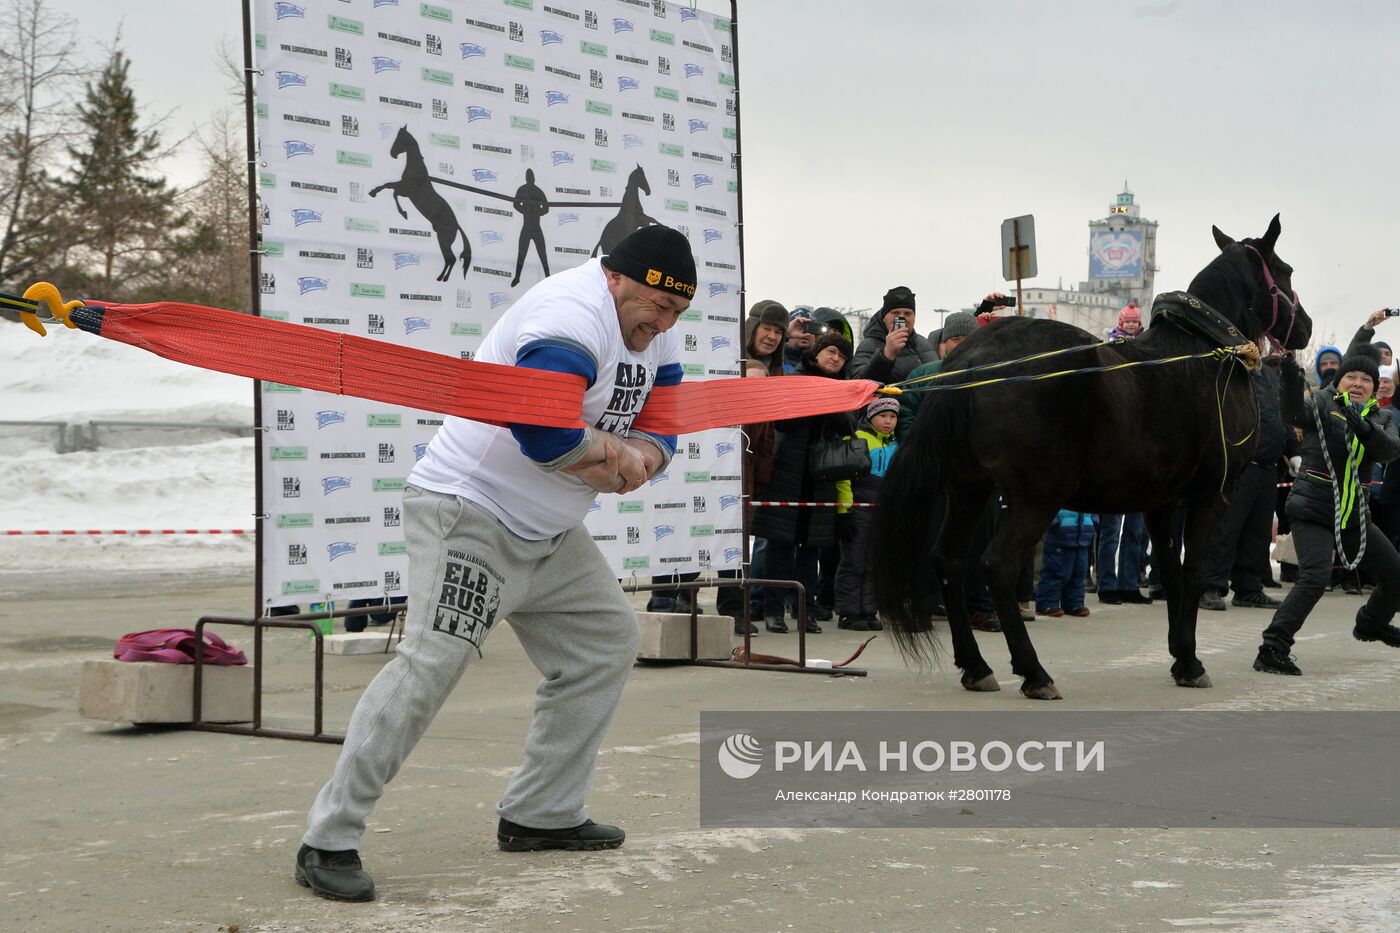 Челябинский силач Эльбрус Нигматуллин совершил уникальный трюк с удерживанием двух коней